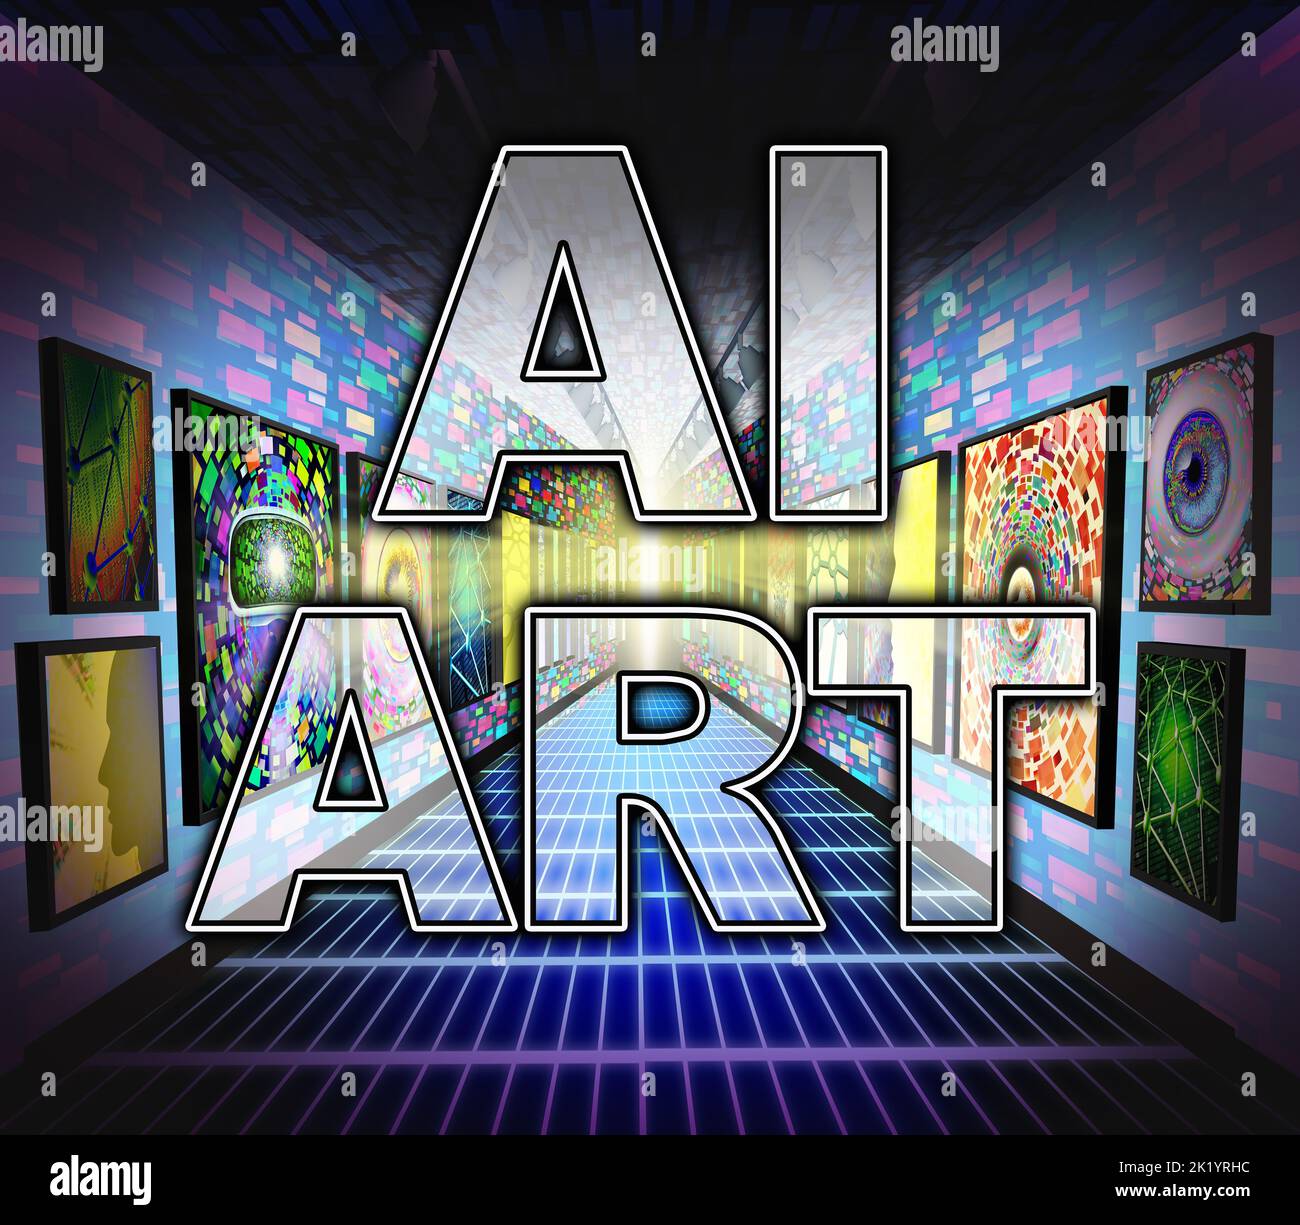 AI arte o pintura artificial símbolo que representa obras artísticas que serían generadas por una computadora como una simulación de la capacidad creativa humana como un Foto de stock